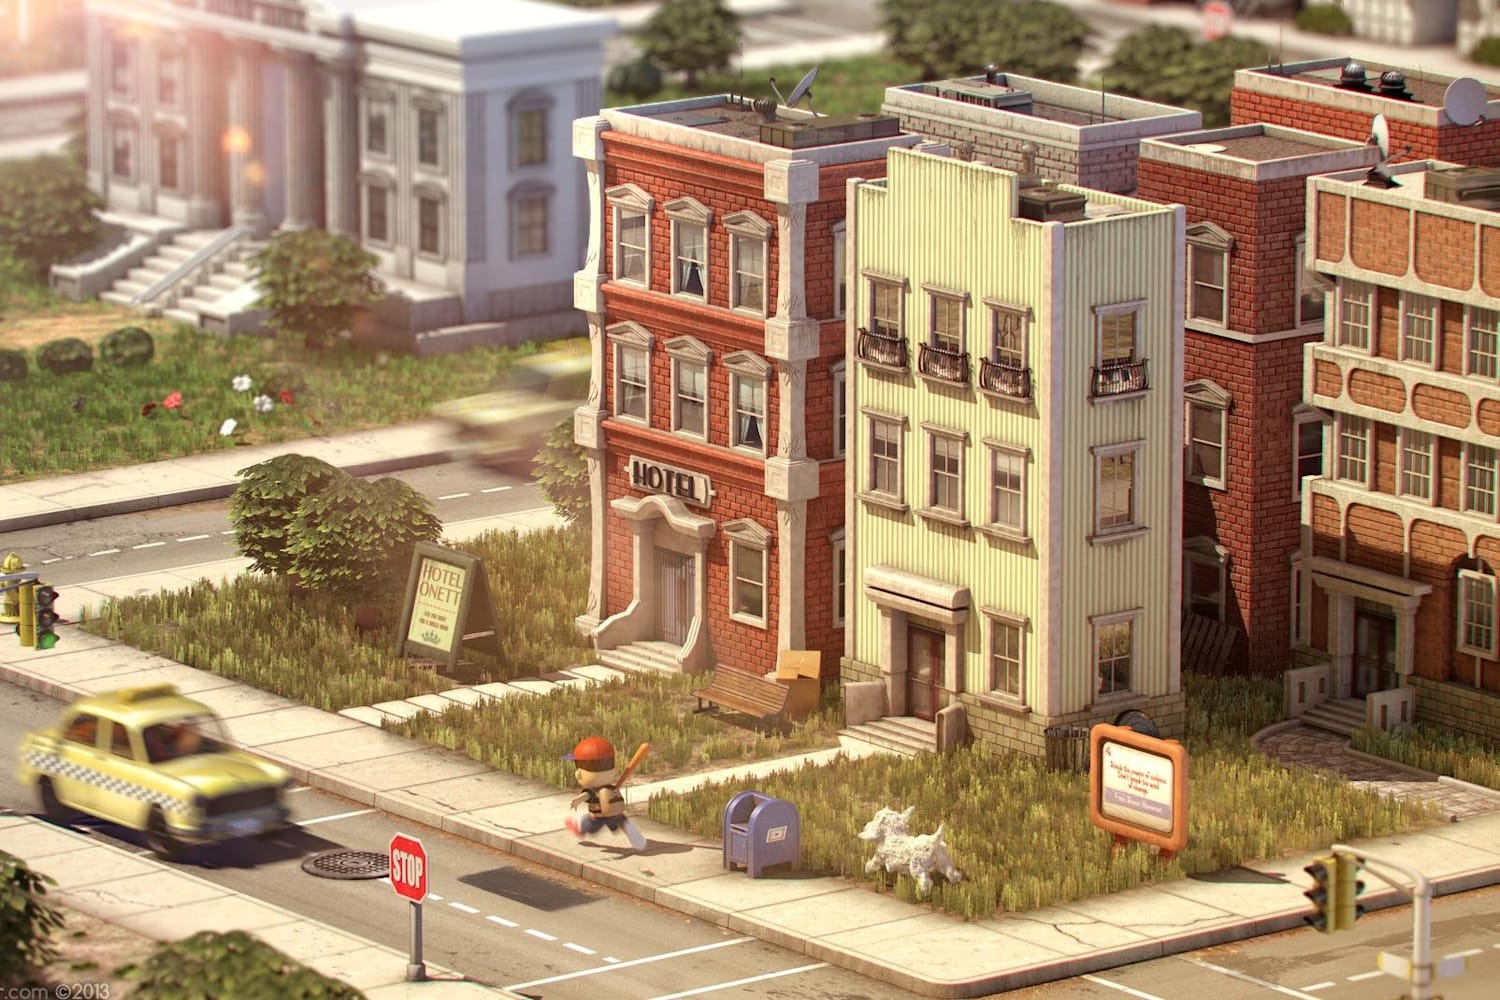 3D Classics: Urban Champion é o próximo a ganhar remake no 3DS